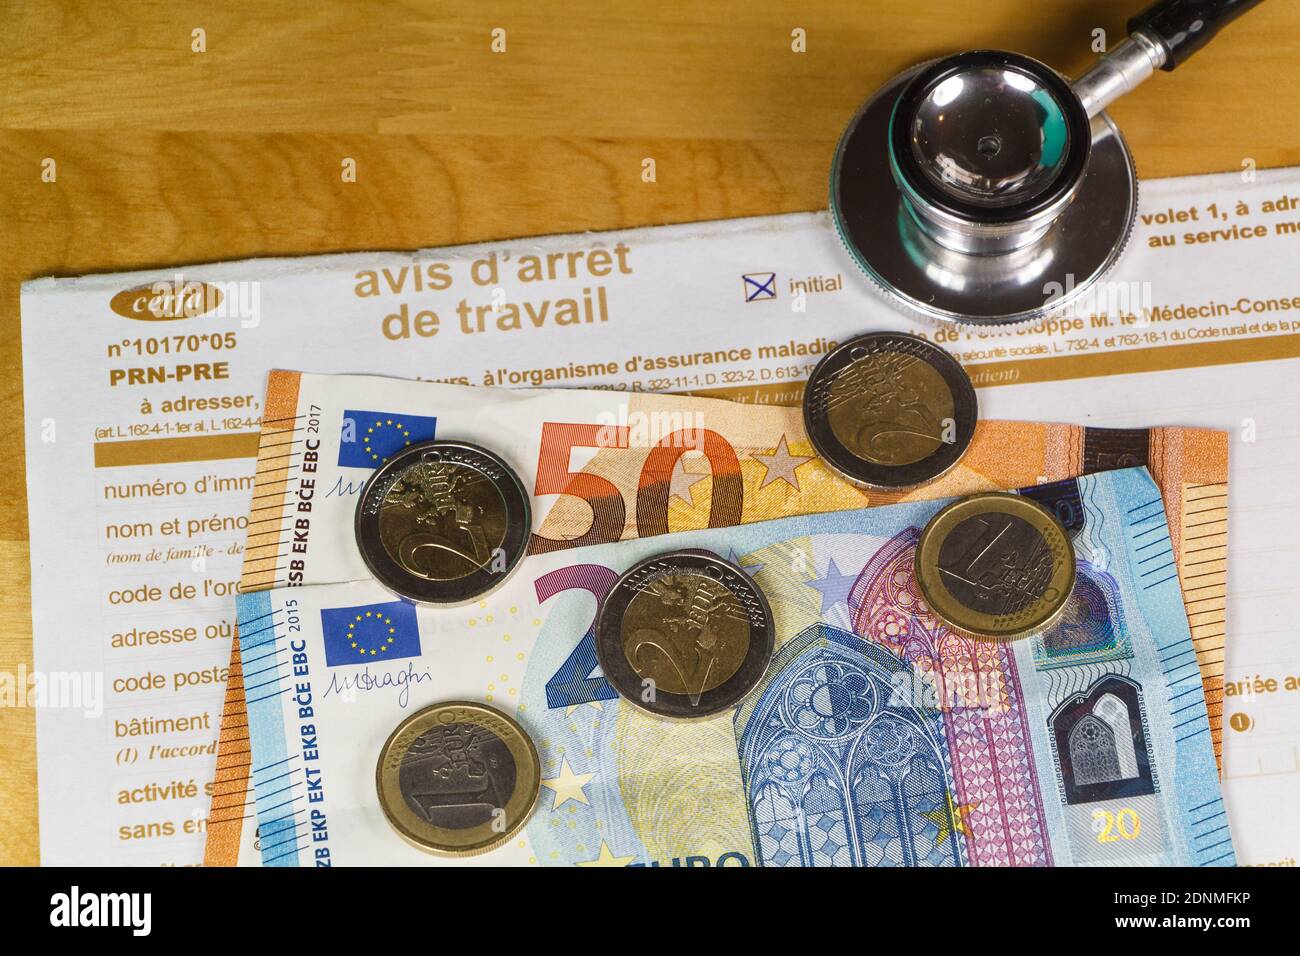 Avis d'arrêt de travail médical en France, stéthoscope noir, billets et pièces en euros Banque D'Images